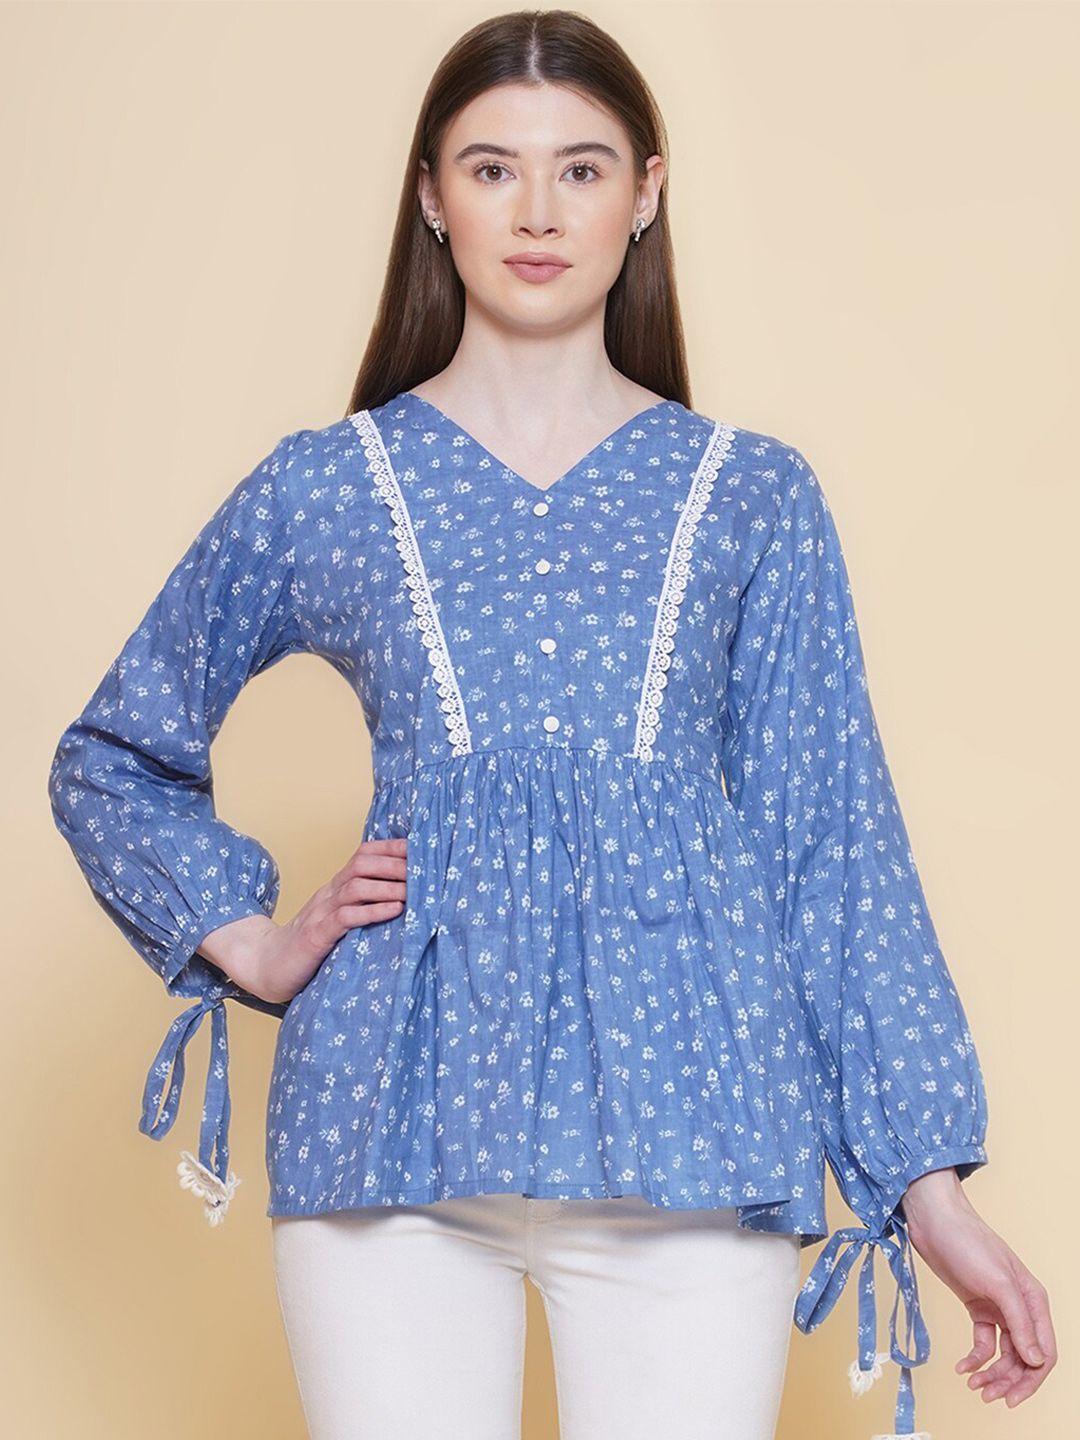 modish couture blue floral print cotton top